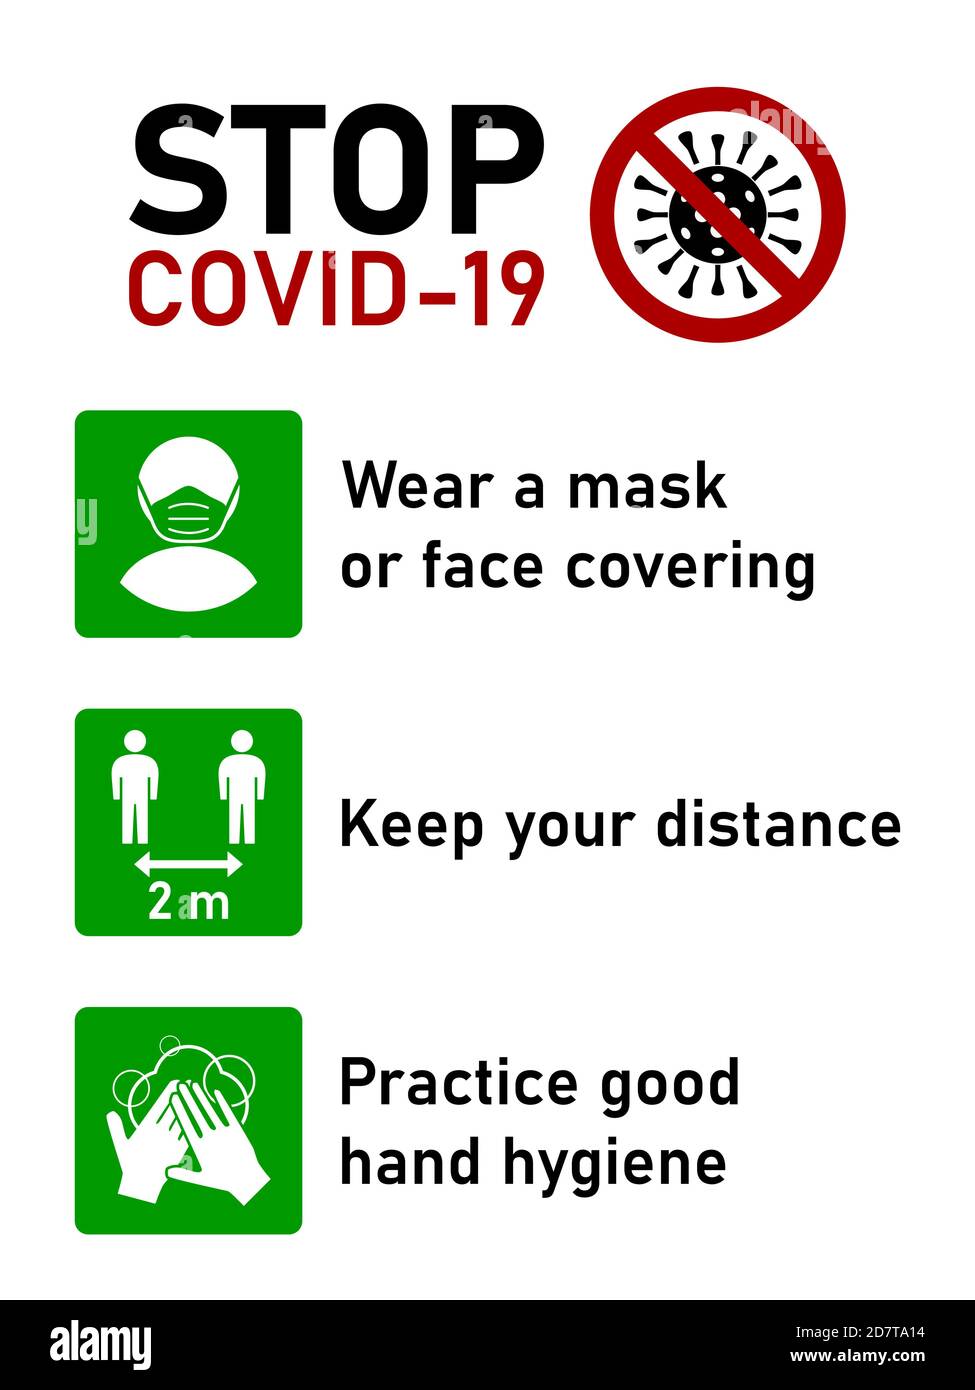 Stop Covid-19 jeu de règles du coronavirus comprenant porter un masque ou une couverture du visage, garder votre distance de 2 mètres et pratiquer une bonne hygiène des mains. Image vectorielle. Illustration de Vecteur